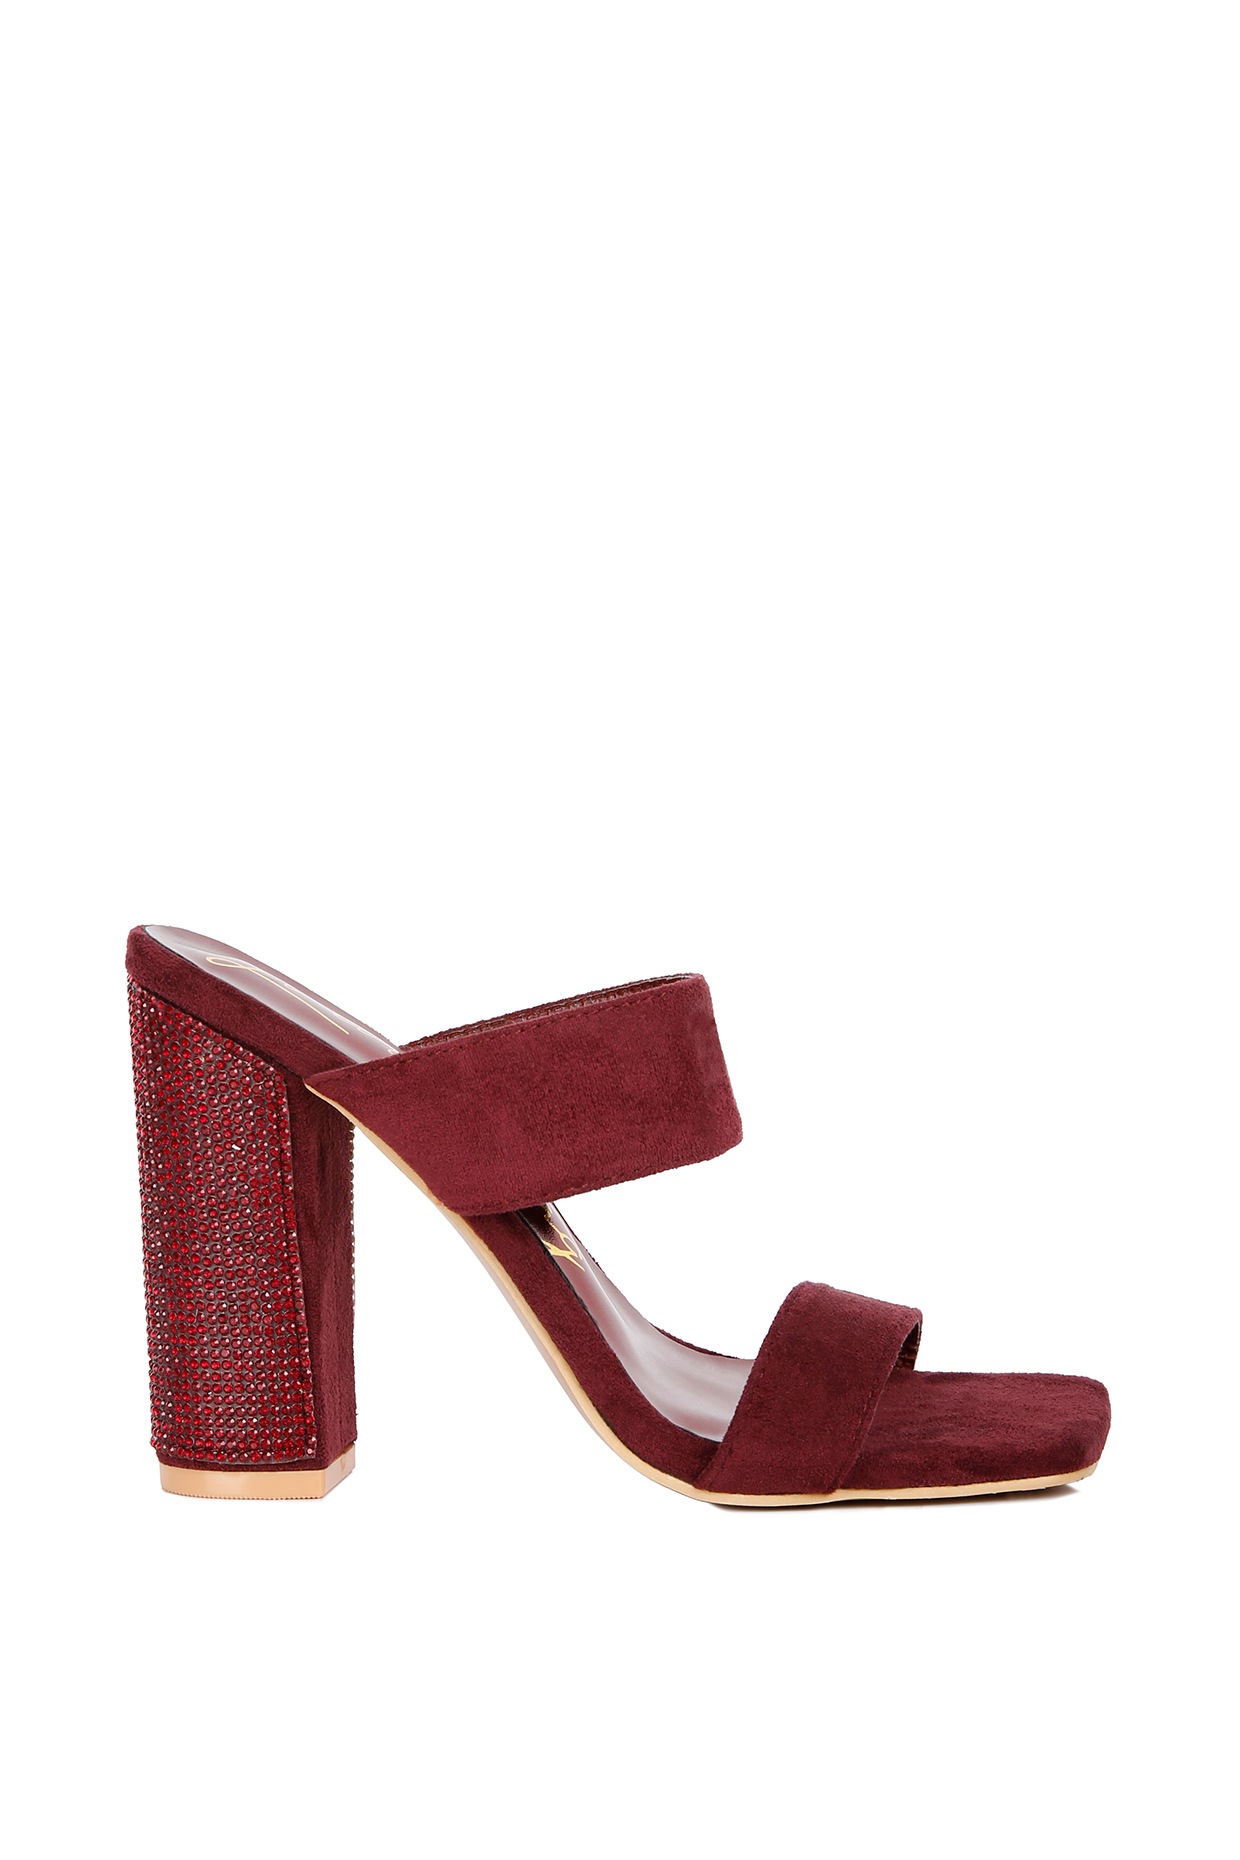 Buy Maroon Heeled Sandals for Women by COMFORT TOES Online | Ajio.com